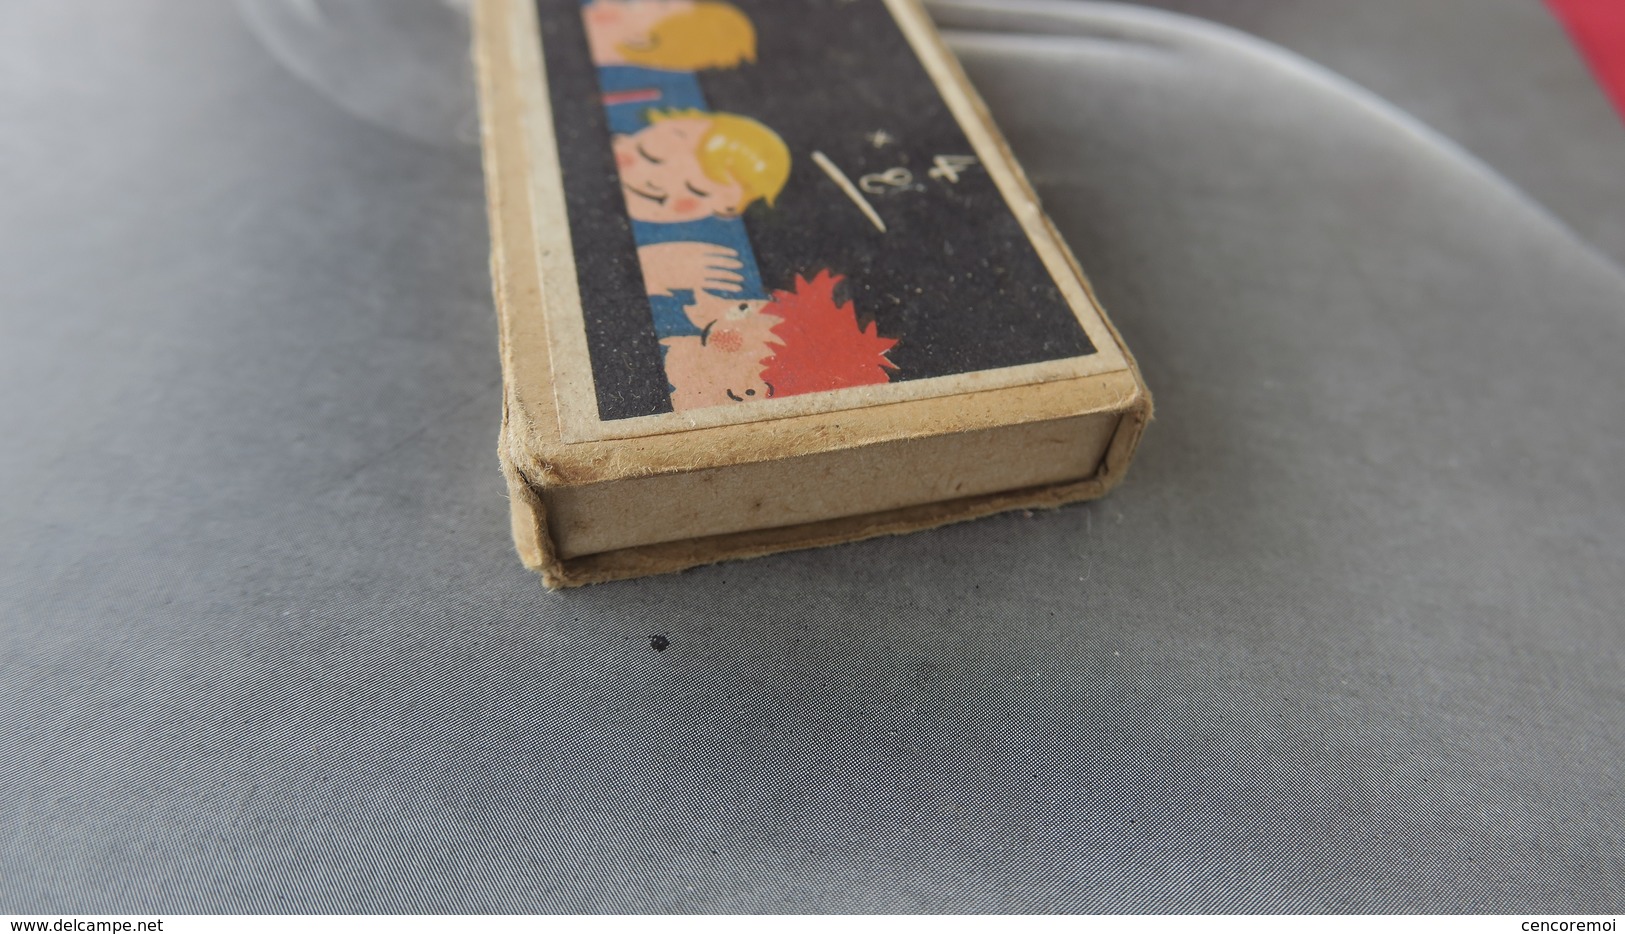 ancienne boite de crayons, gomme, illustration de gamins sur les bancs de l'école